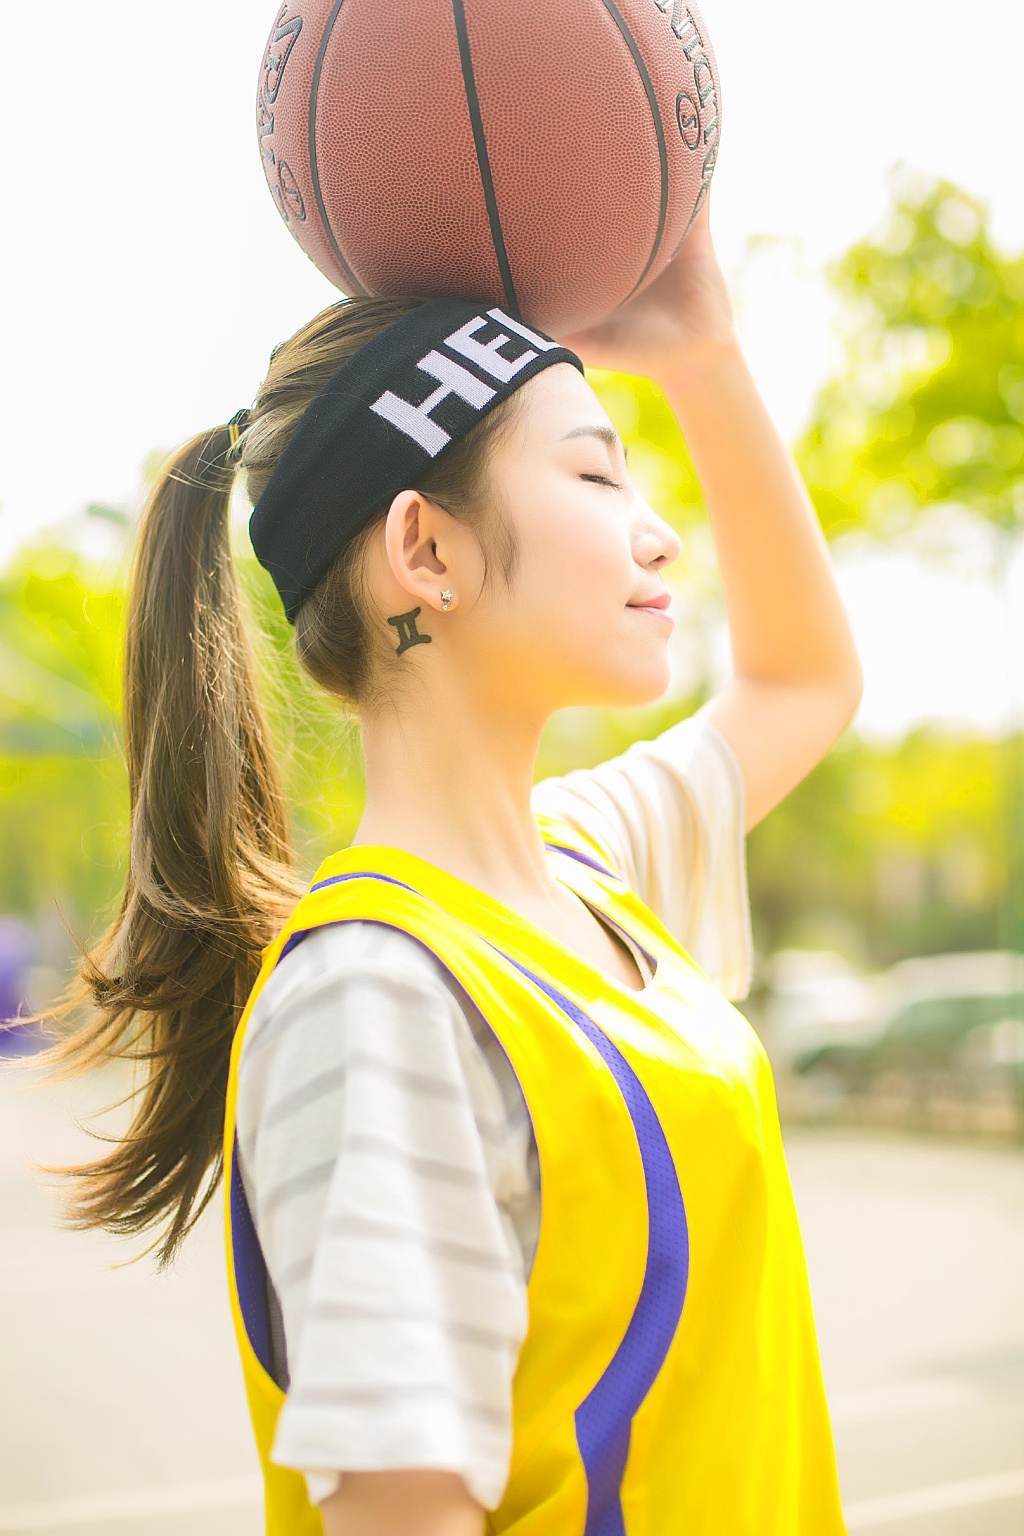 清纯少女篮球运动写真活力四射